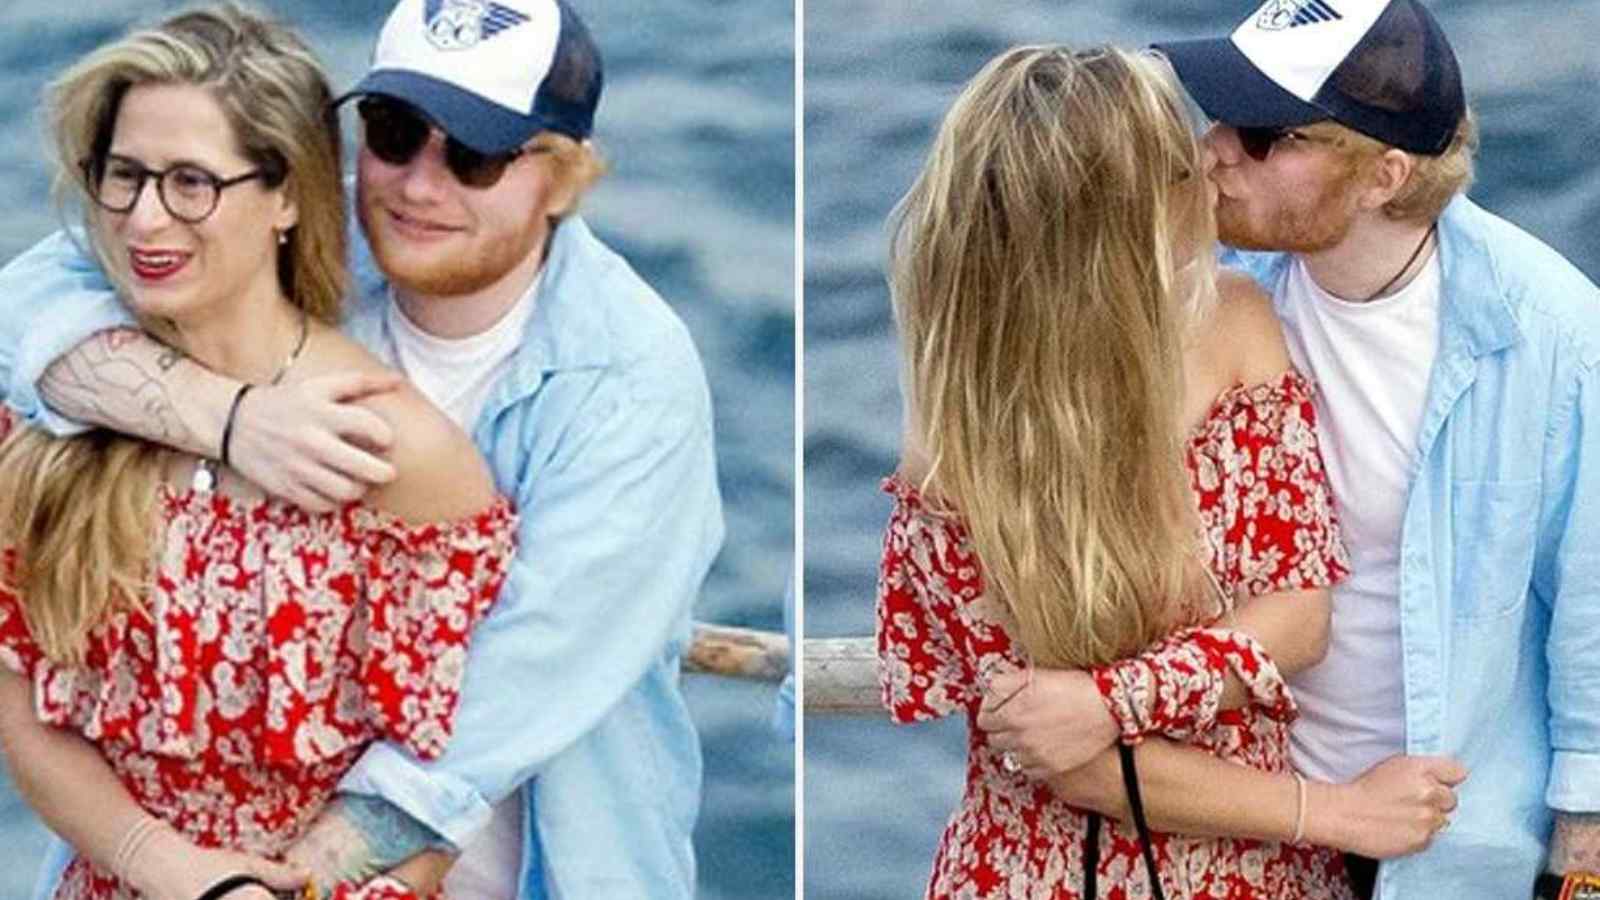 Ed Sheeran Wife Illness